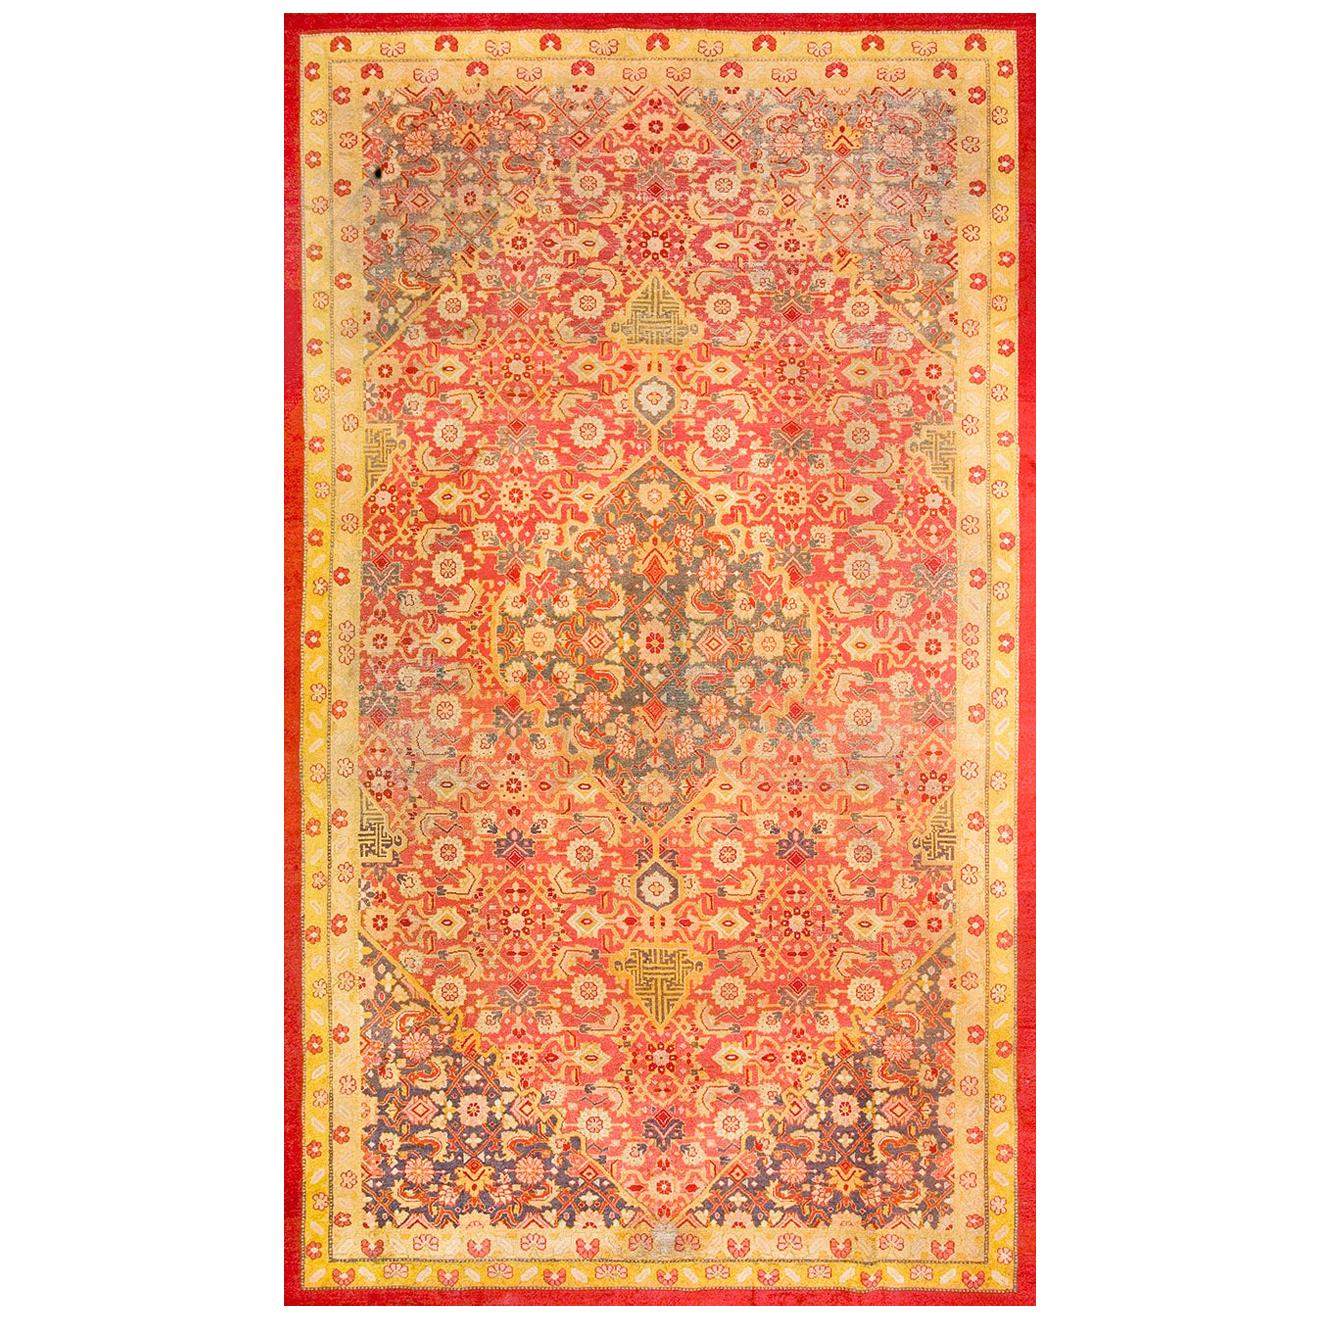 N. Indischer Amritsar-Teppich des frühen 20. Jahrhunderts ( 9'6" x 16'3" - 290 x 495")